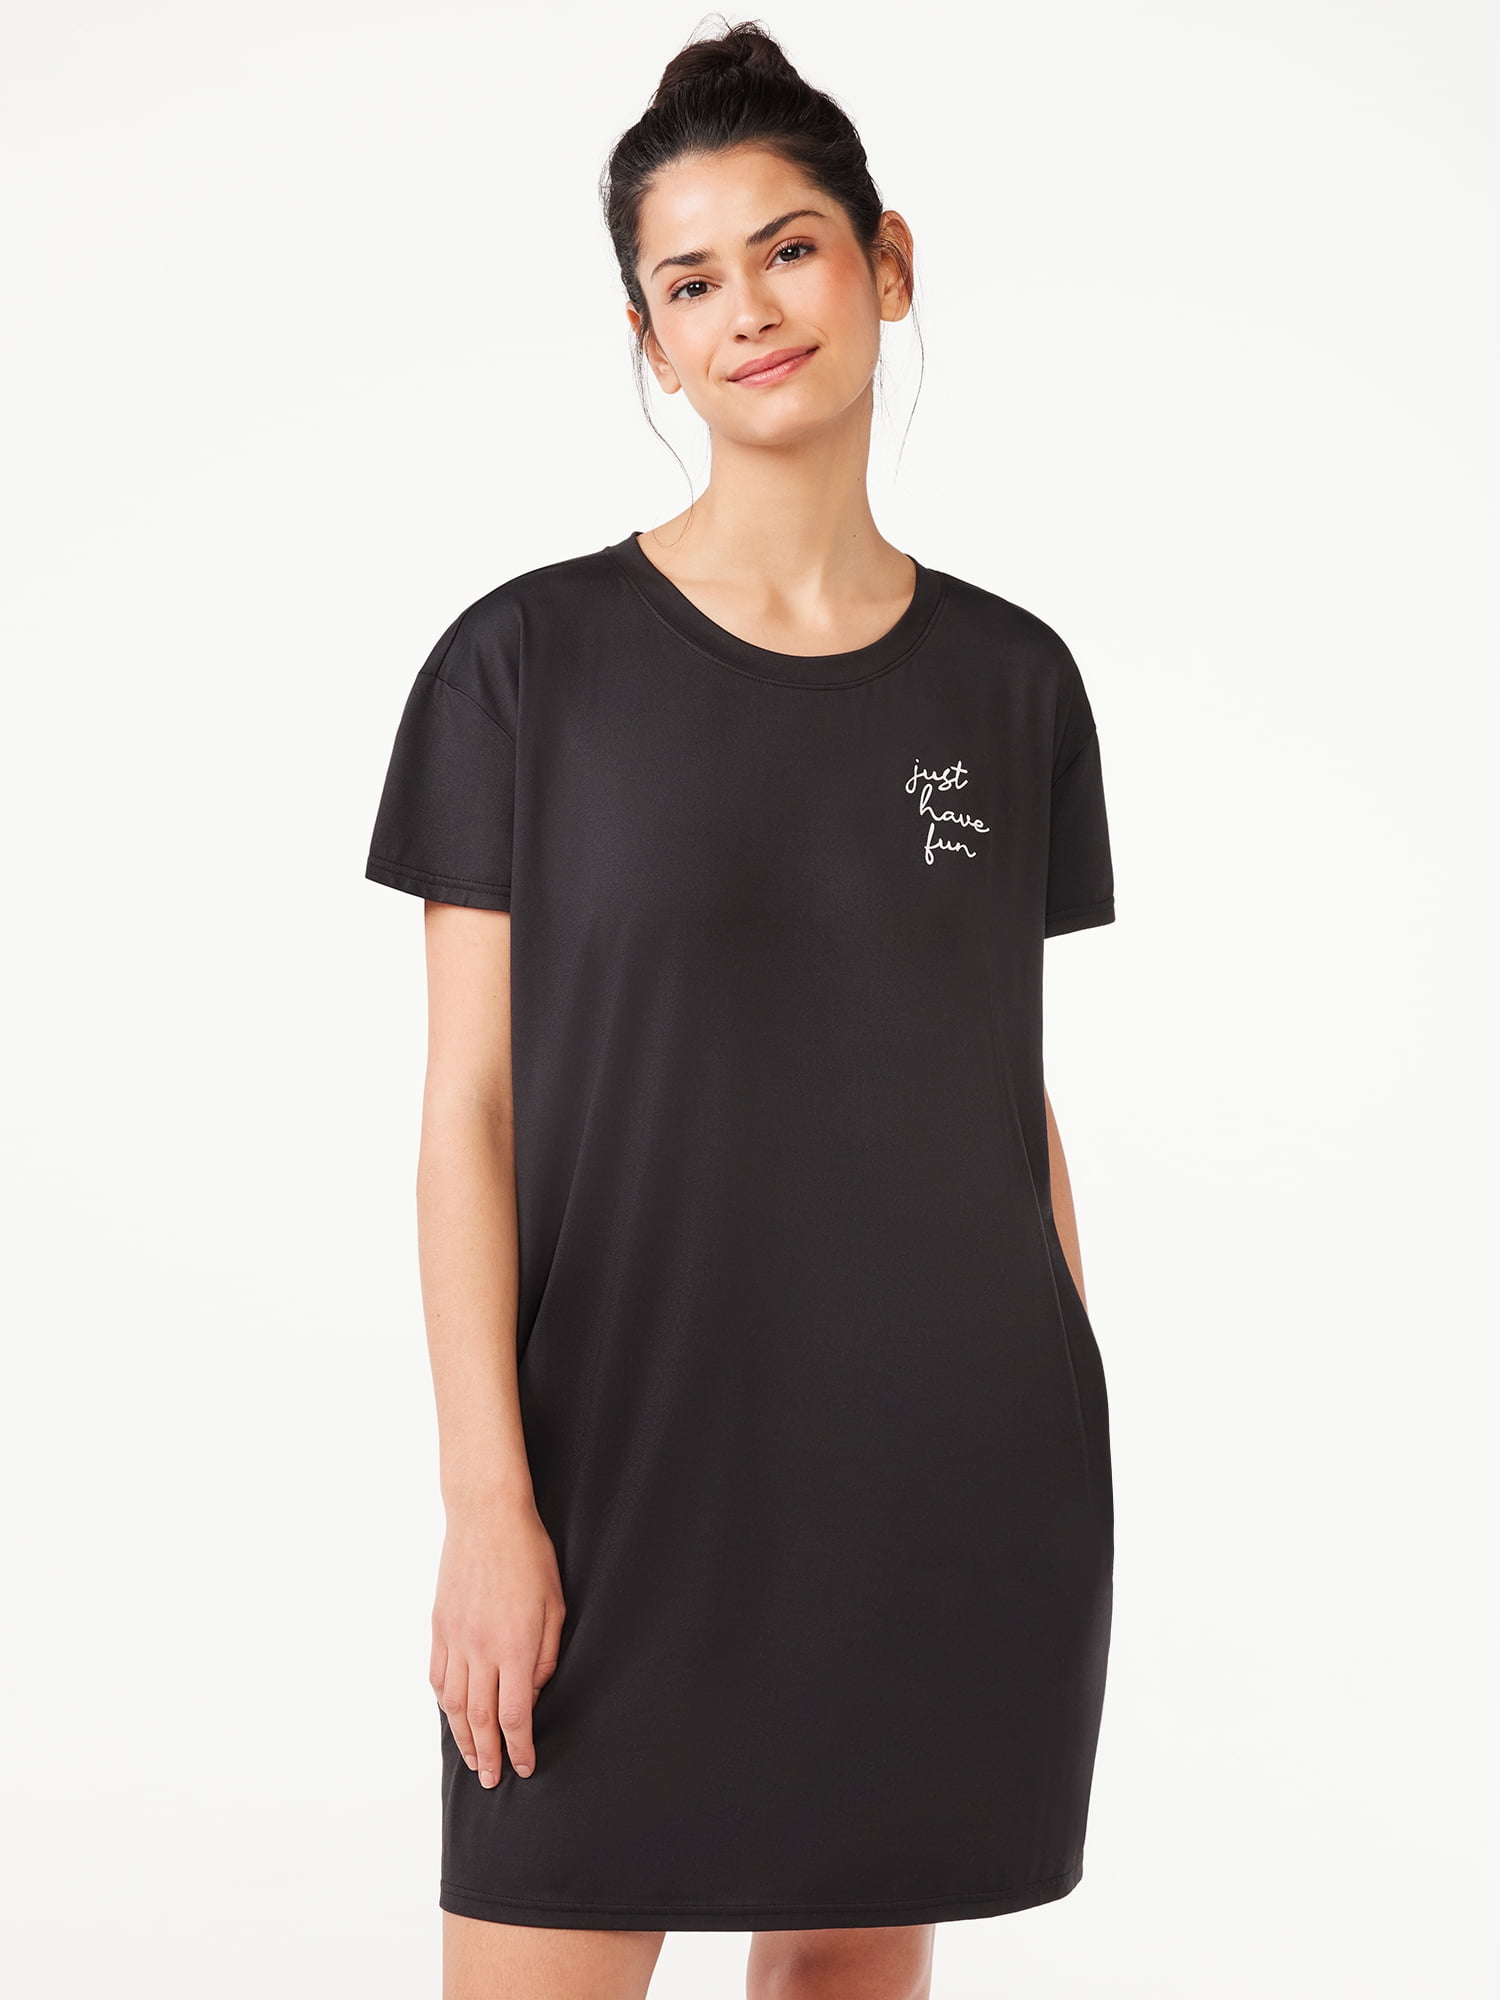 Joyspun Women's Print Sleepshirt with Pockets, Sizes S/M to 2X/3X 